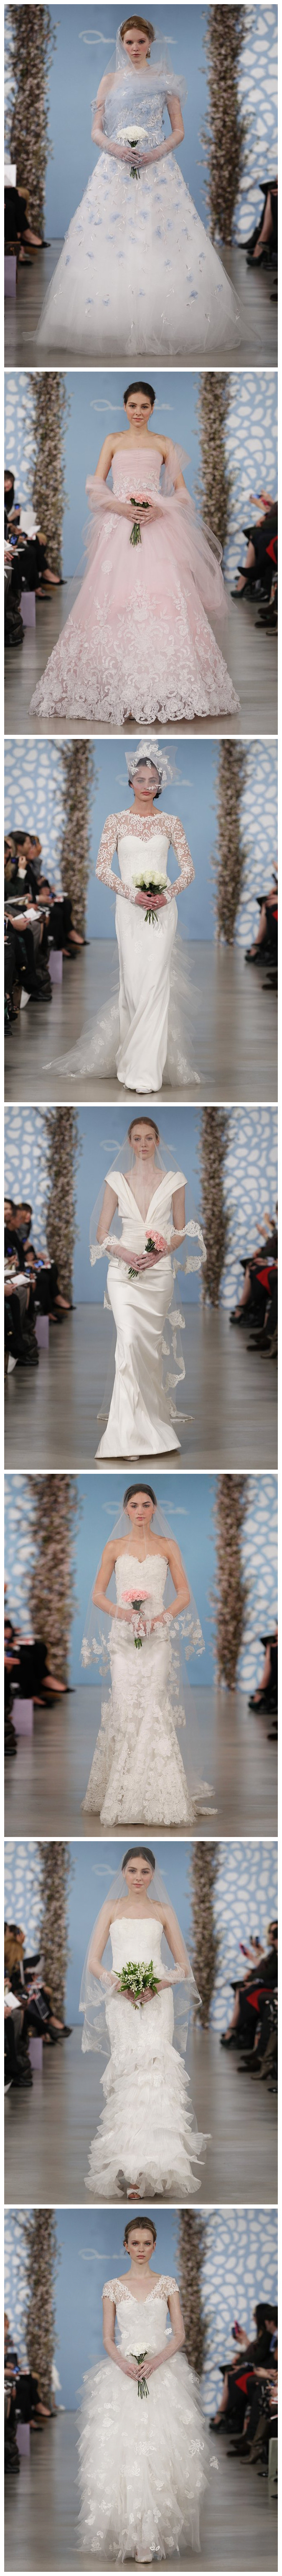 Bridal Collection Spring 2014 de Oscar de la Renda